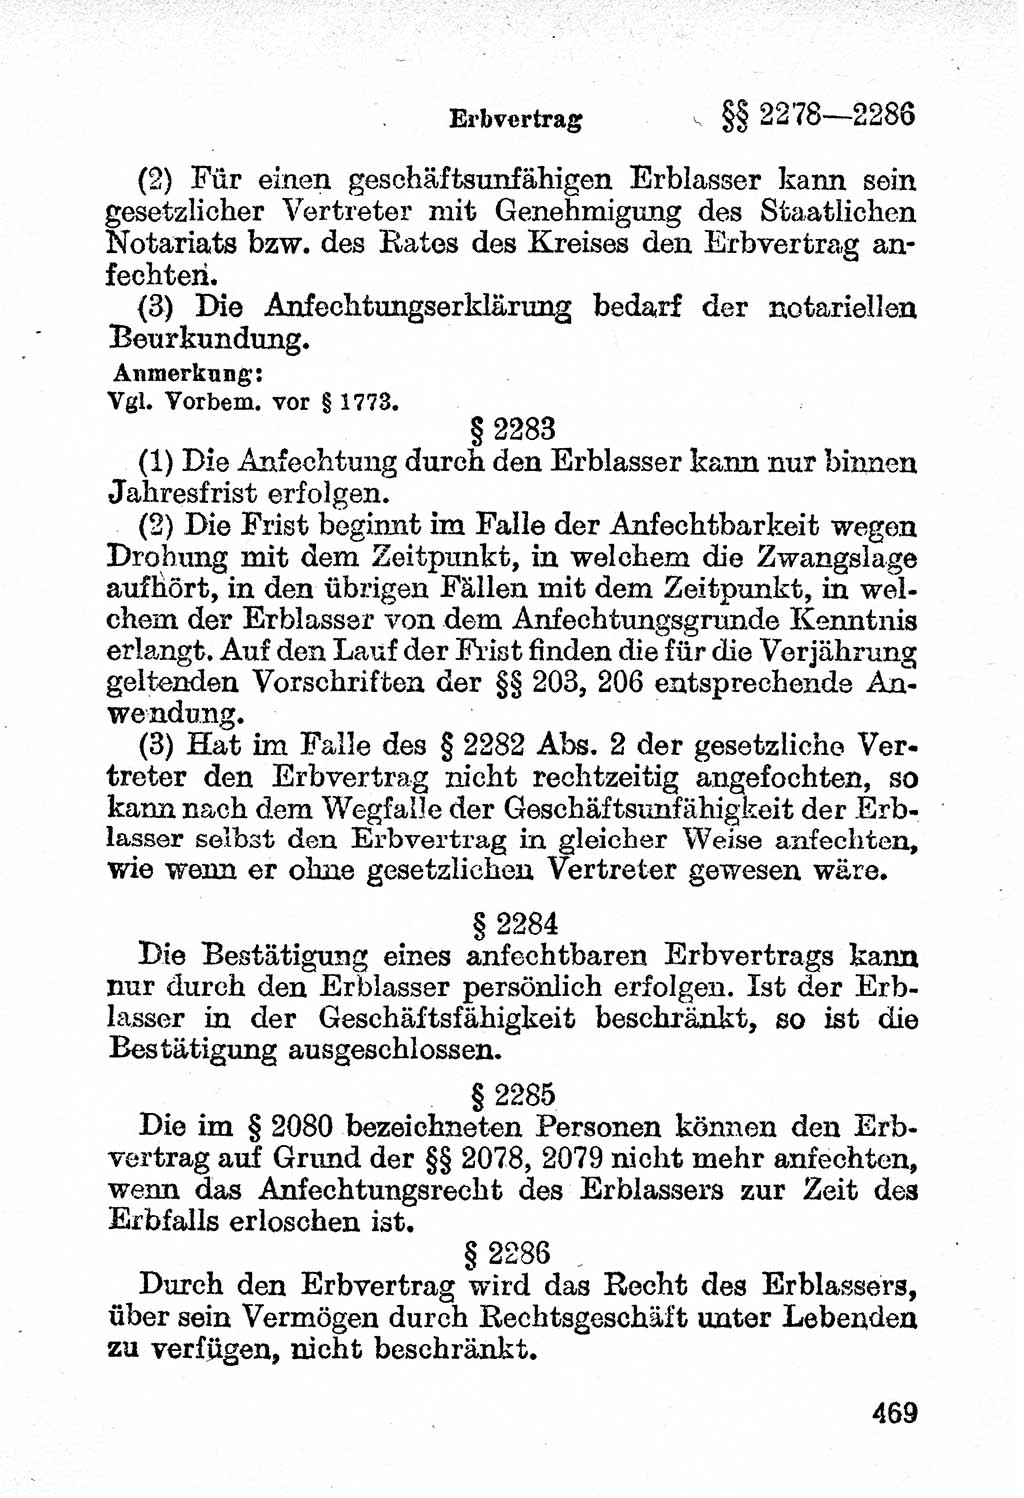 Bürgerliches Gesetzbuch (BGB) nebst wichtigen Nebengesetzen [Deutsche Demokratische Republik (DDR)] 1956, Seite 469 (BGB Nebenges. DDR 1956, S. 469)